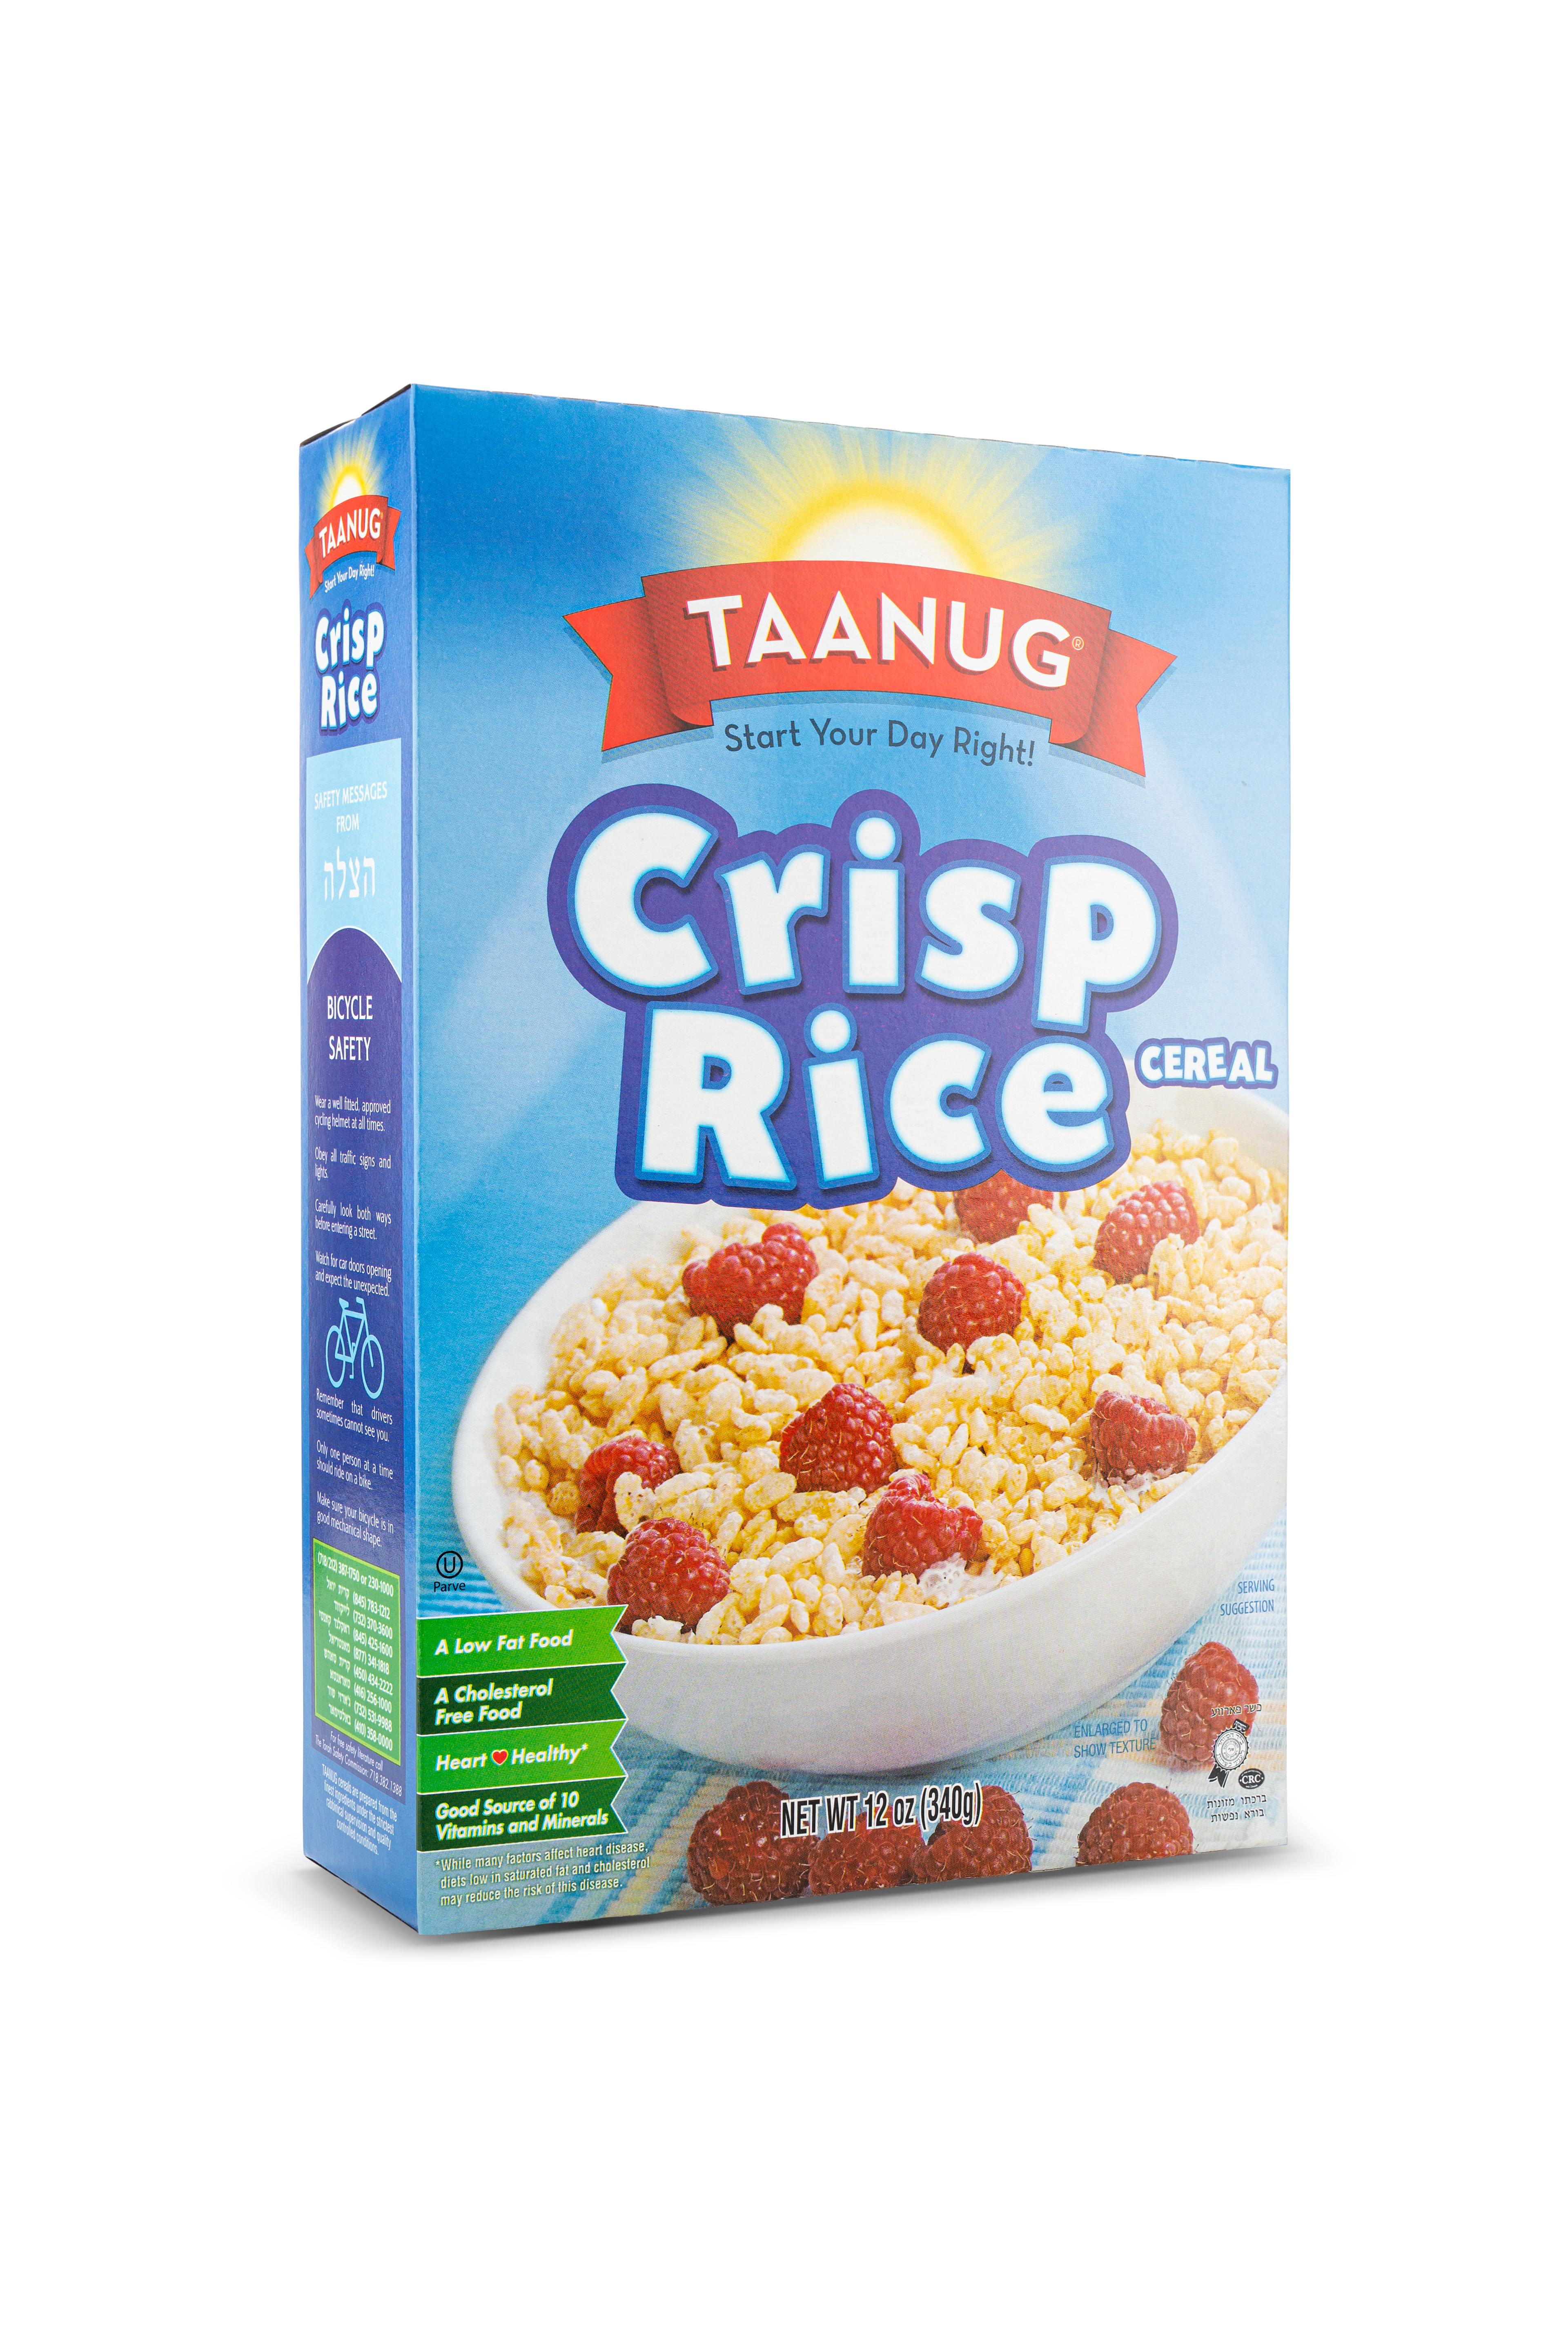 Taanug Crisp Rice Cereal 14 units per case 12.0 oz